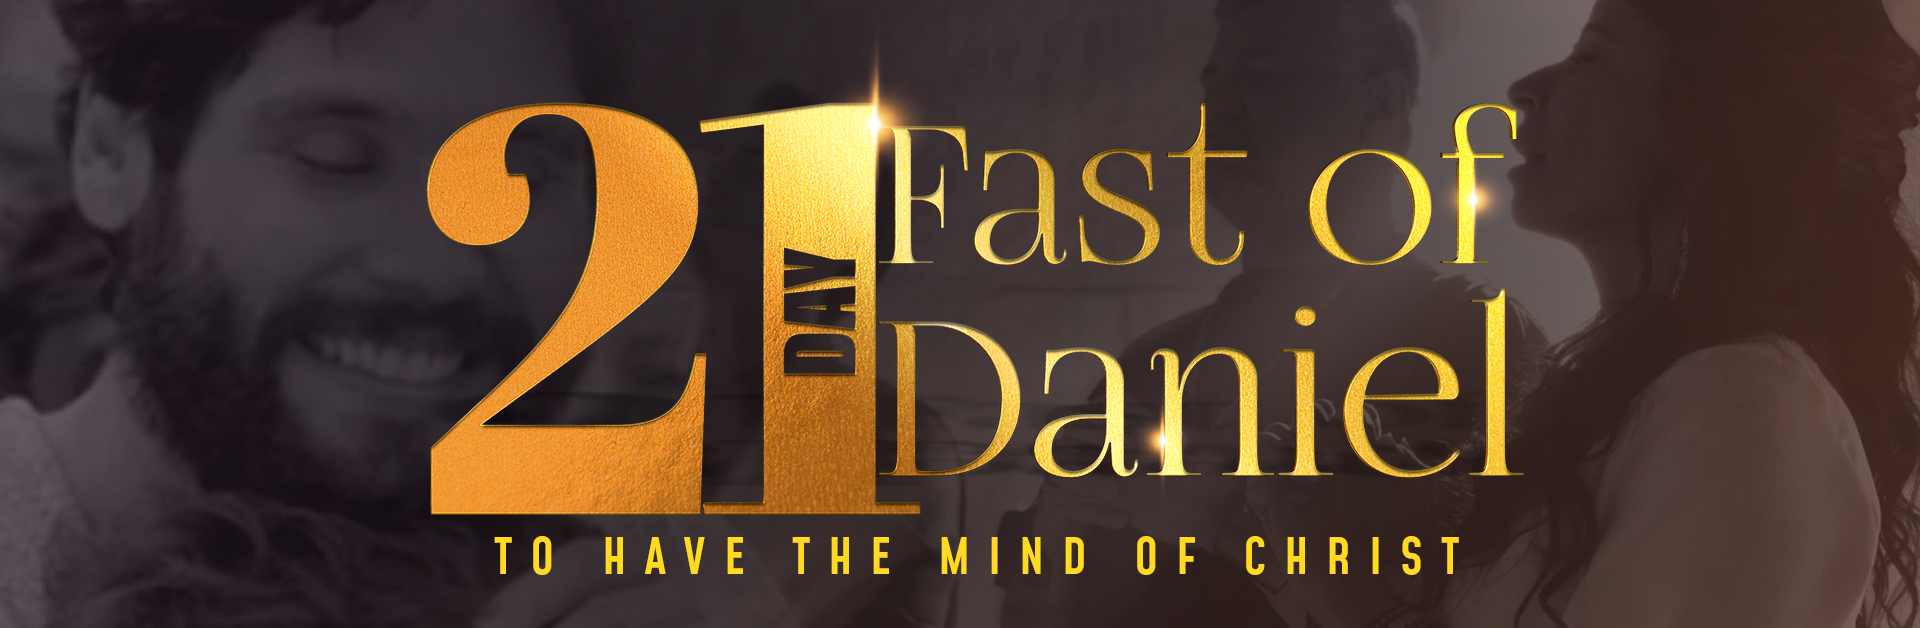 Fast of Daniel: Sick Mind1 min read